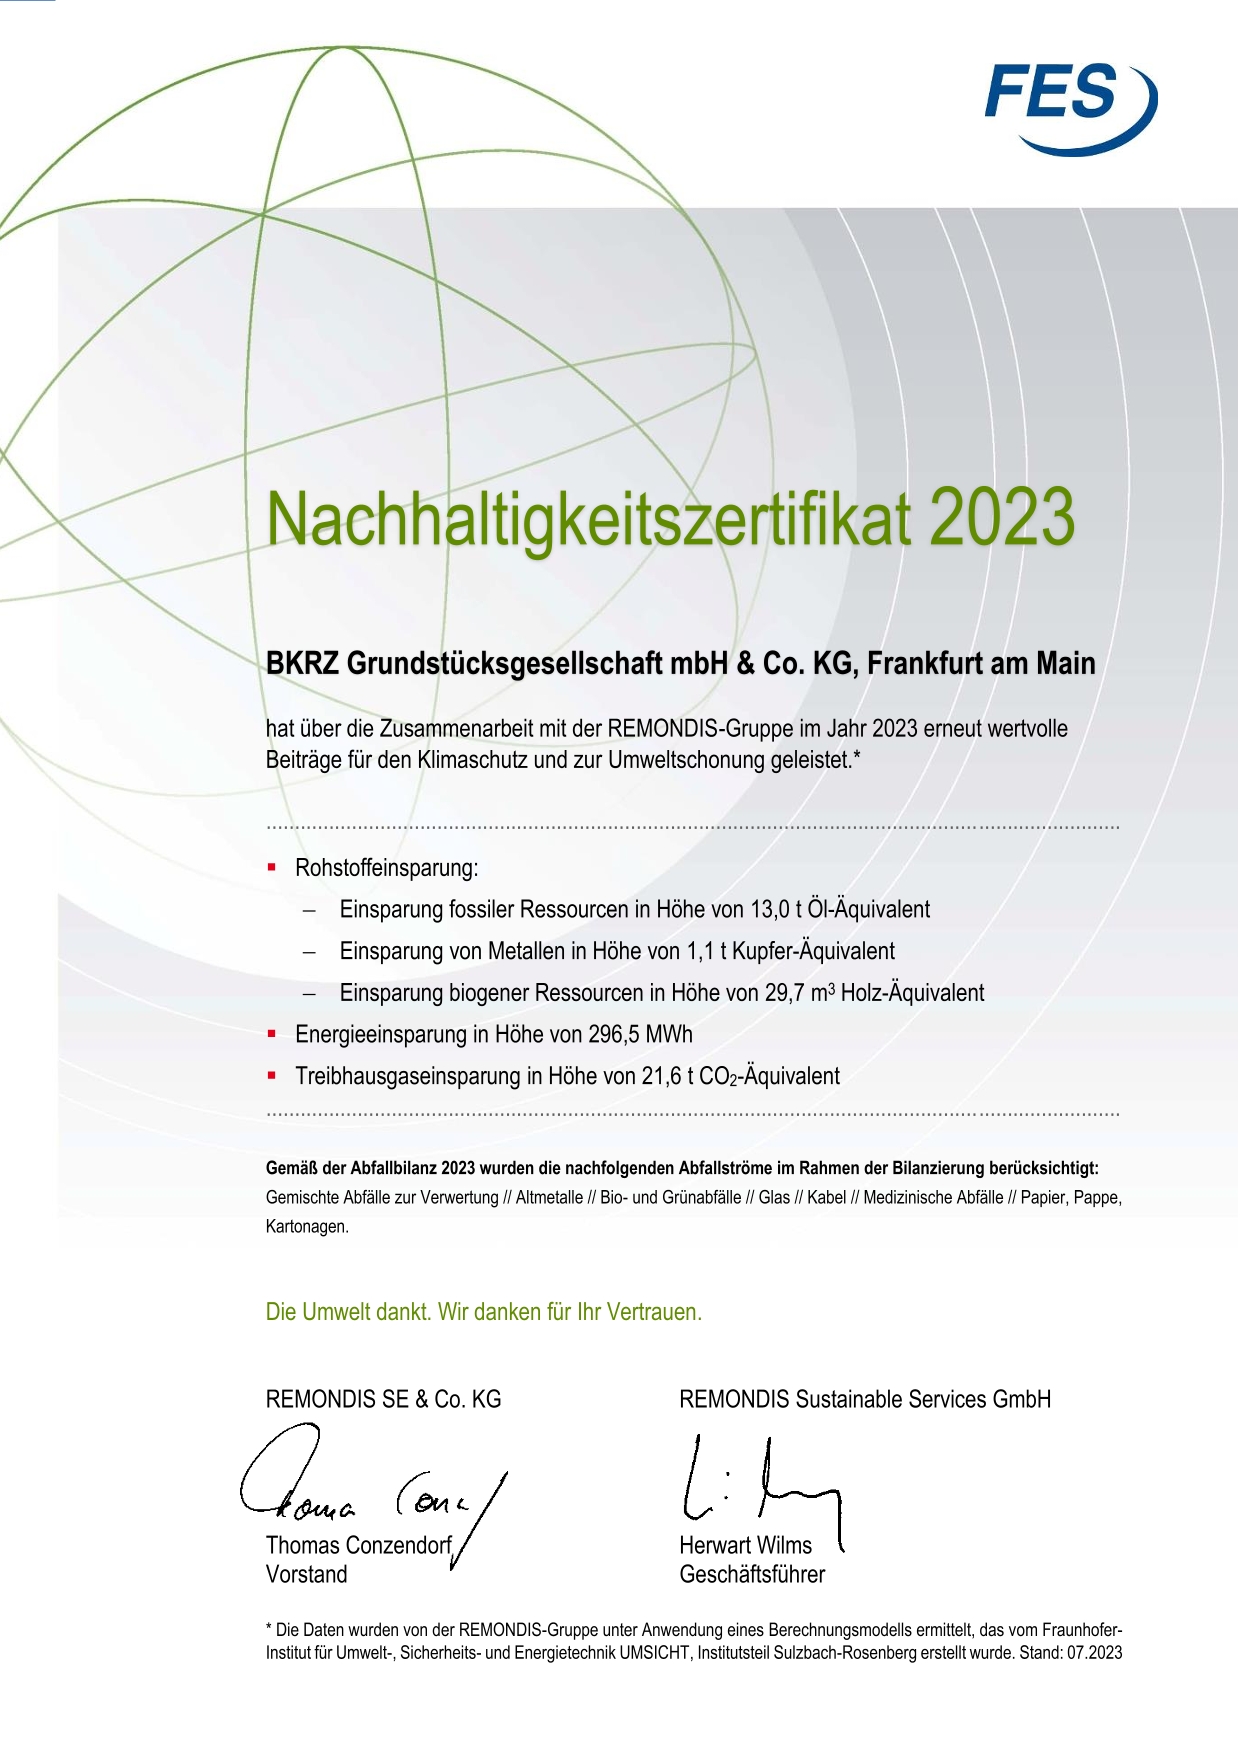 Nachhaltigkeitszertifikat 2023 der FES für die BKRZ | © BKRZ GmbH & Co. KG